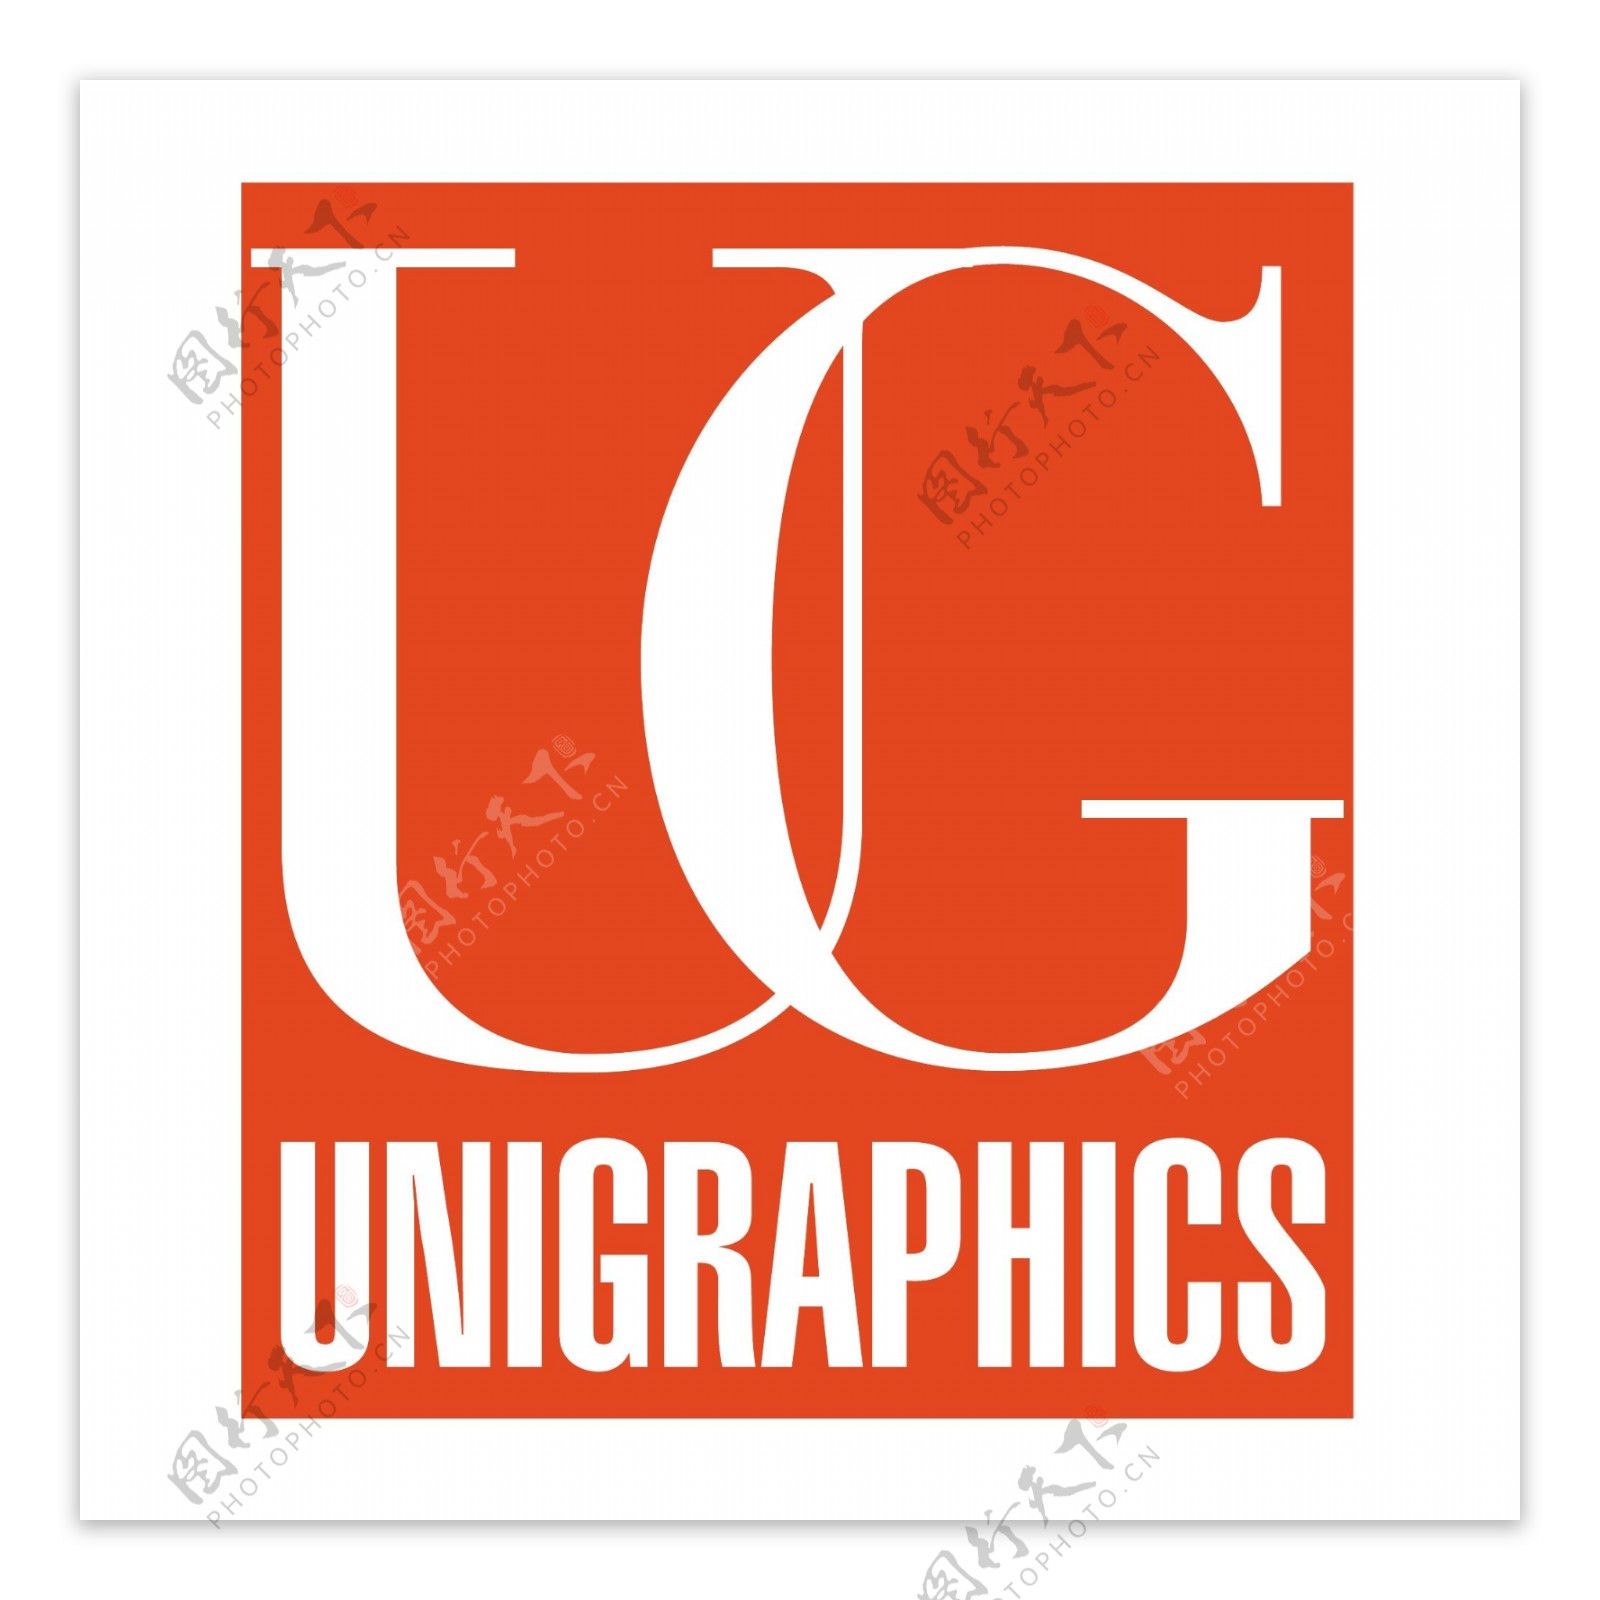 UnigraphicsSolutions